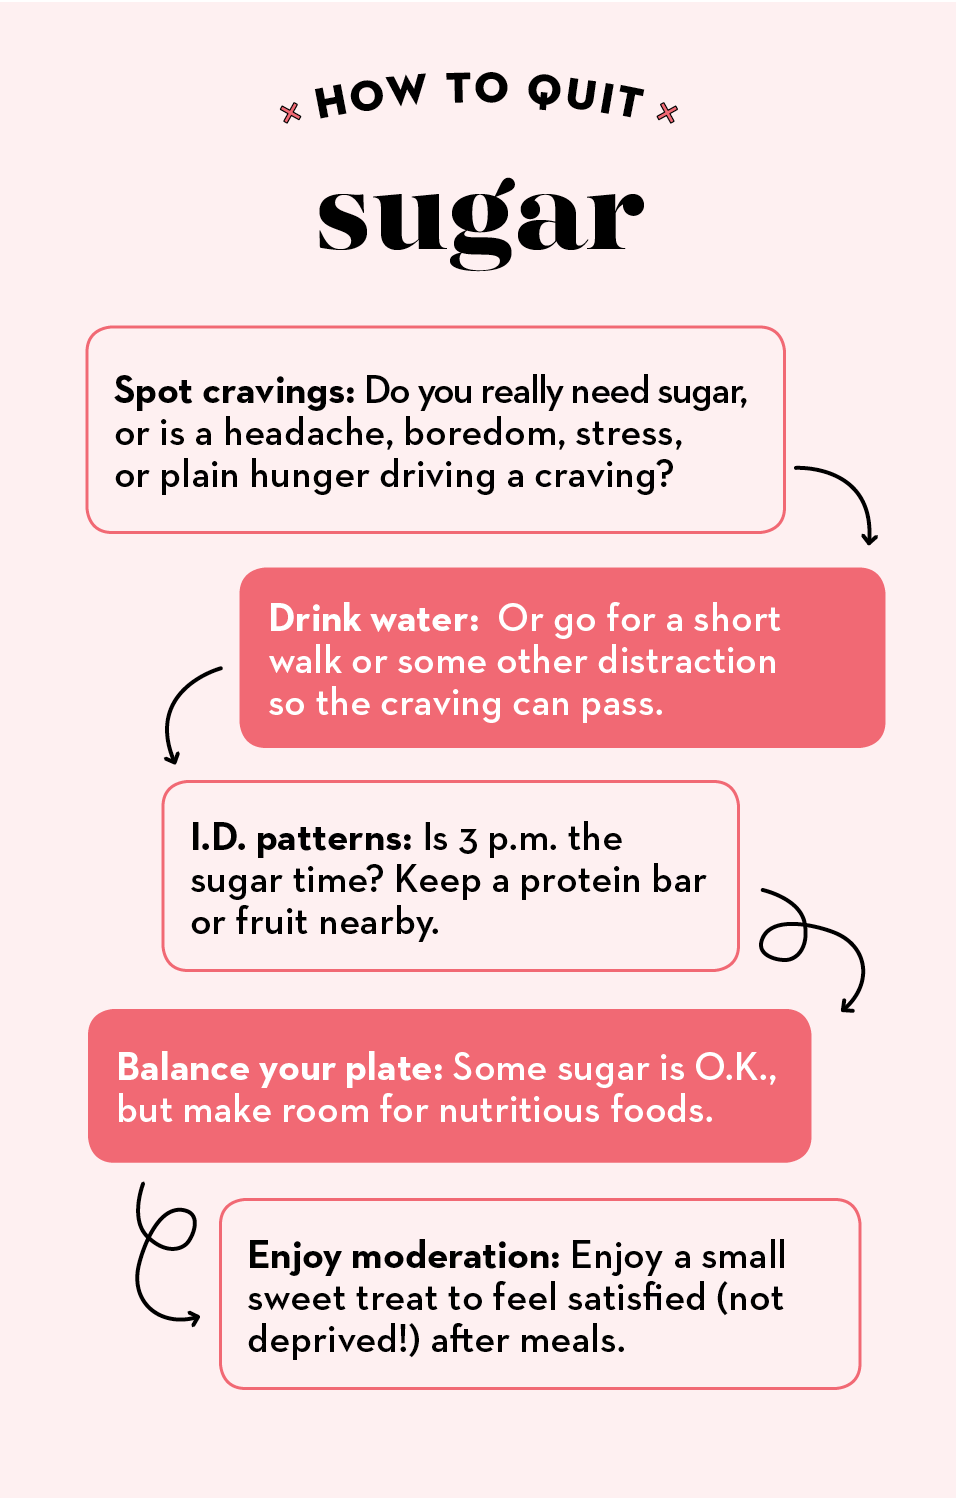 Sugar cravings and stress